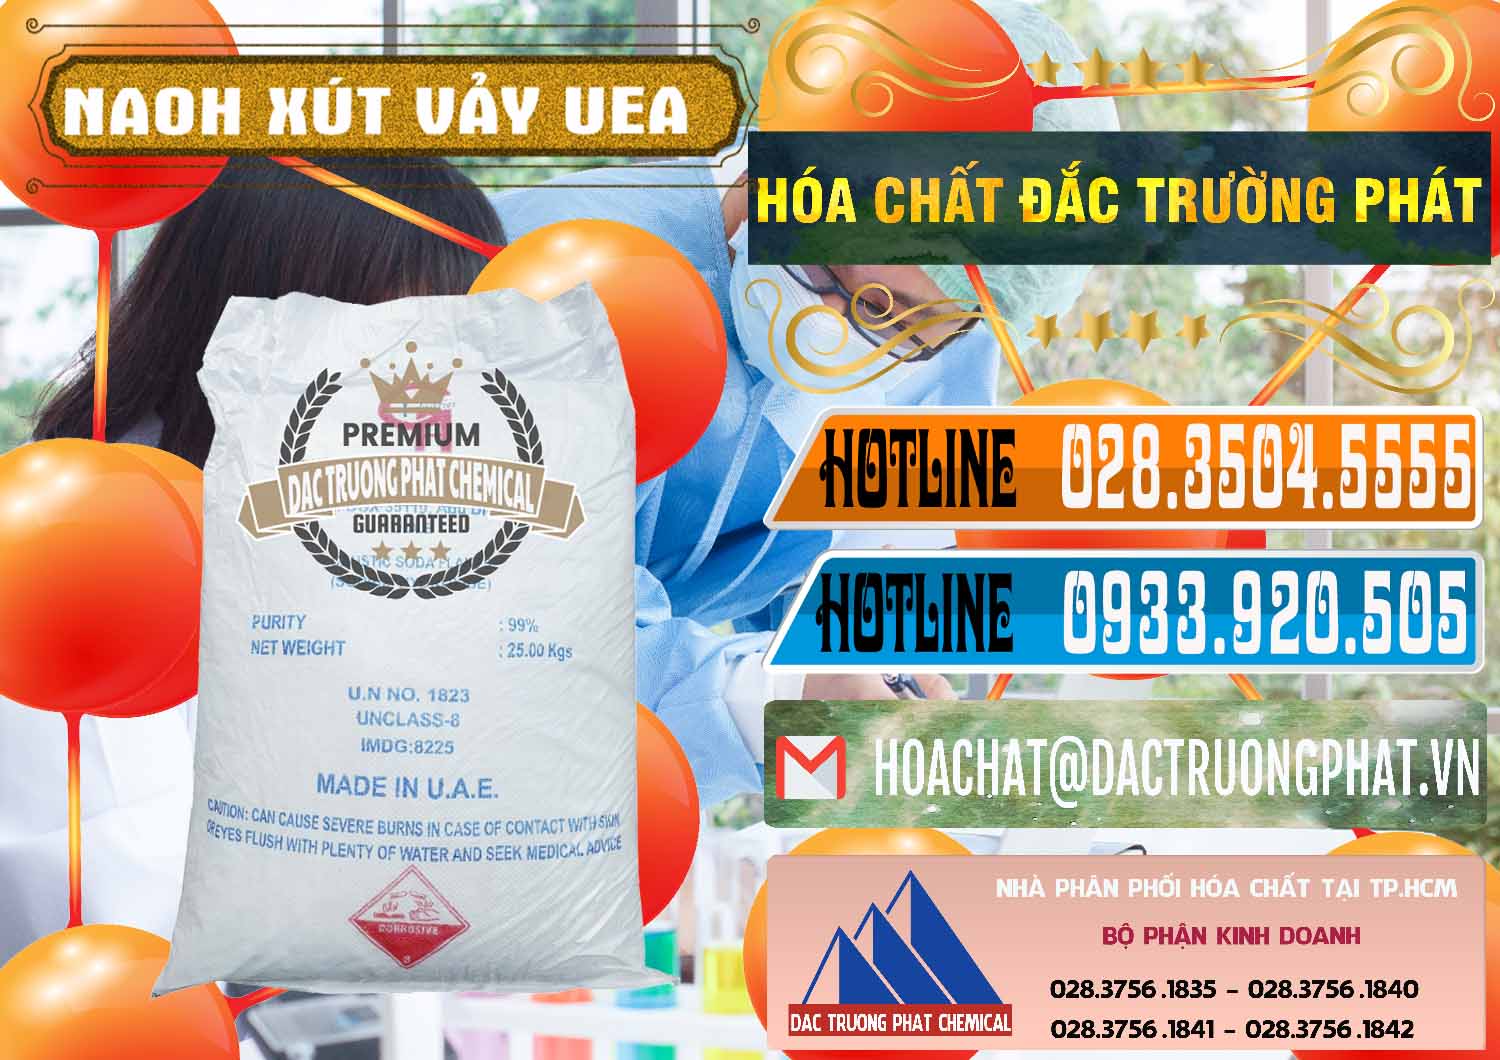 Cty chuyên phân phối ( bán ) Xút Vảy - NaOH Vảy UAE Iran - 0432 - Cty chuyên nhập khẩu ( cung cấp ) hóa chất tại TP.HCM - stmp.net